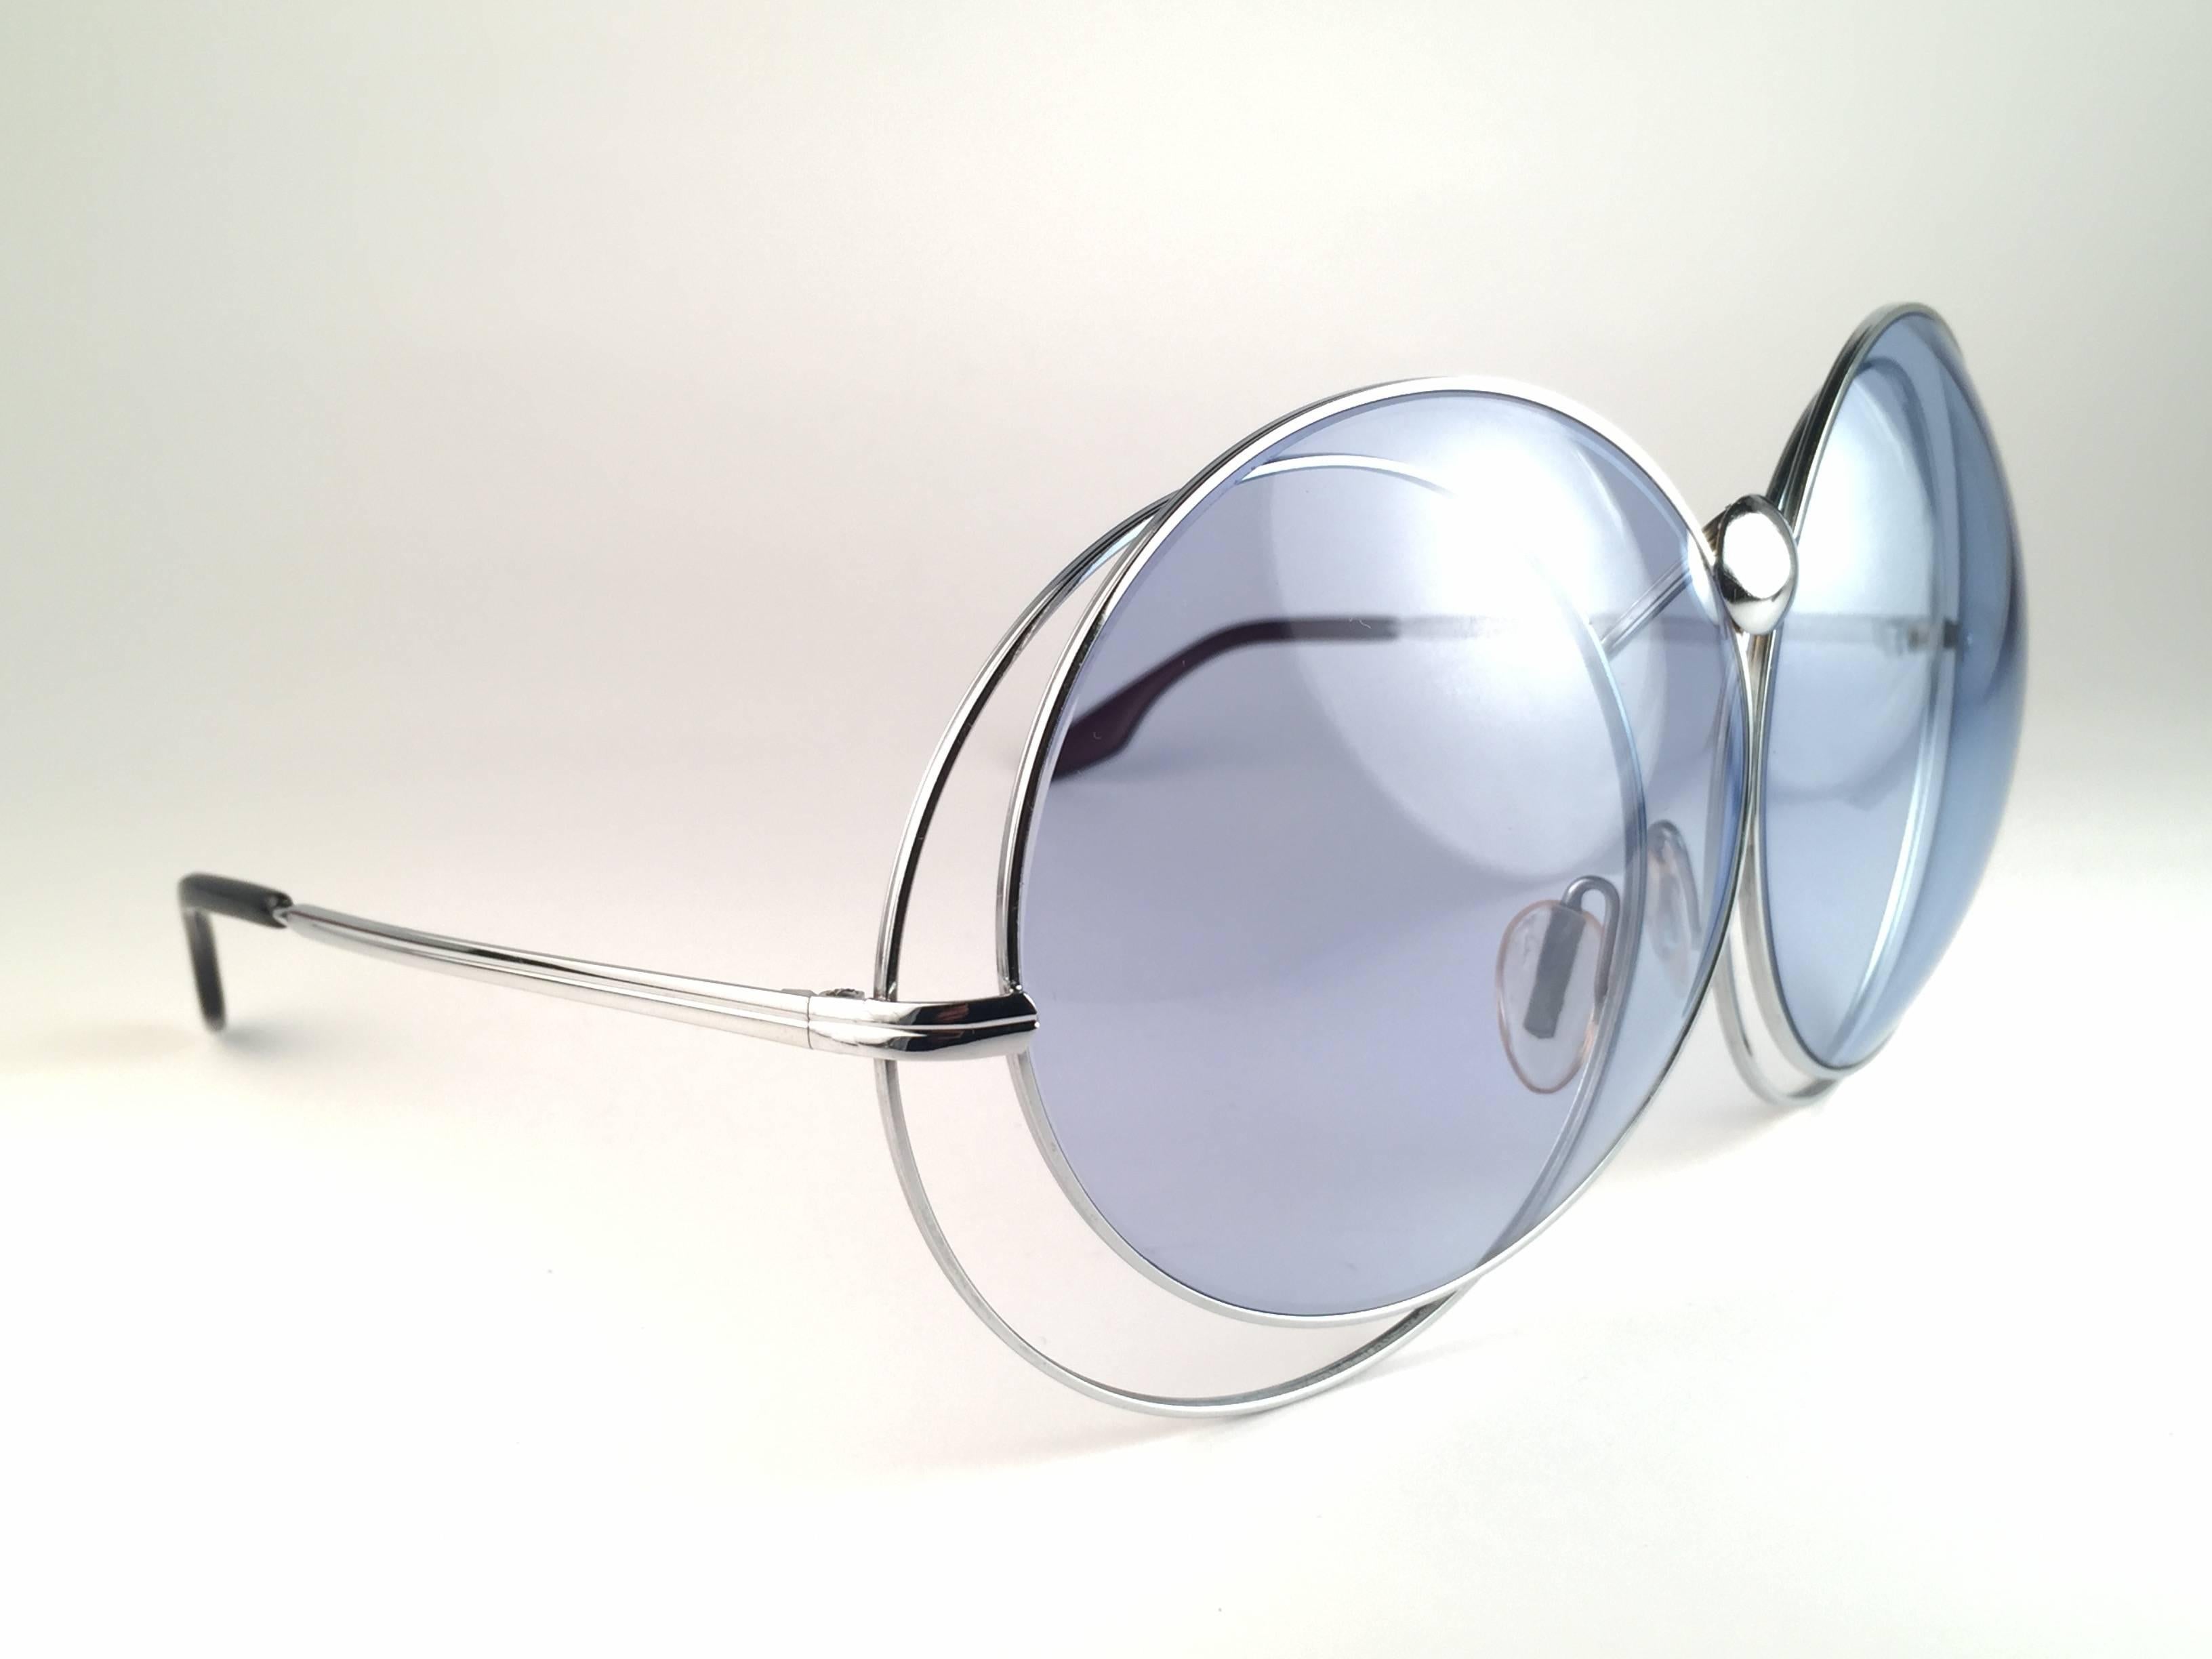 Superbe. Objet de collection rare Nouveau Vintage Christian Dior Oversized 1970's Sunglasses. 

Monture surdimensionnée en métal argenté emboîté contenant une paire de lentilles bleu céleste impeccables. 
Fabriqué en Allemagne.
 
Produit et conçu